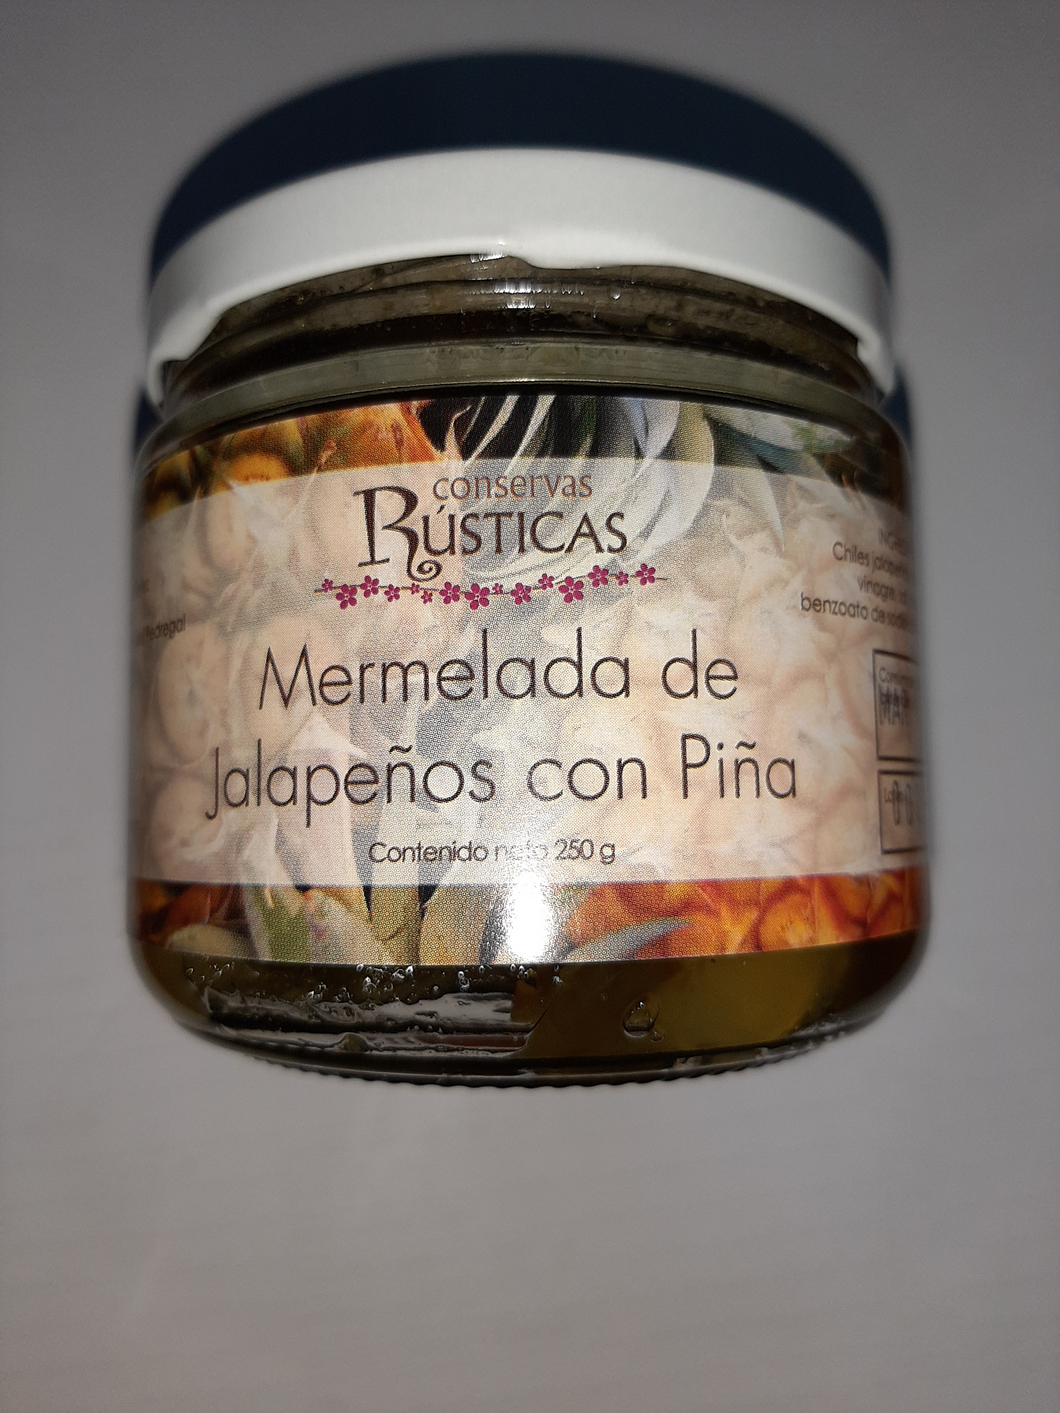 Mermelada de jalapeños con piña Conservas Rústicas 250 g